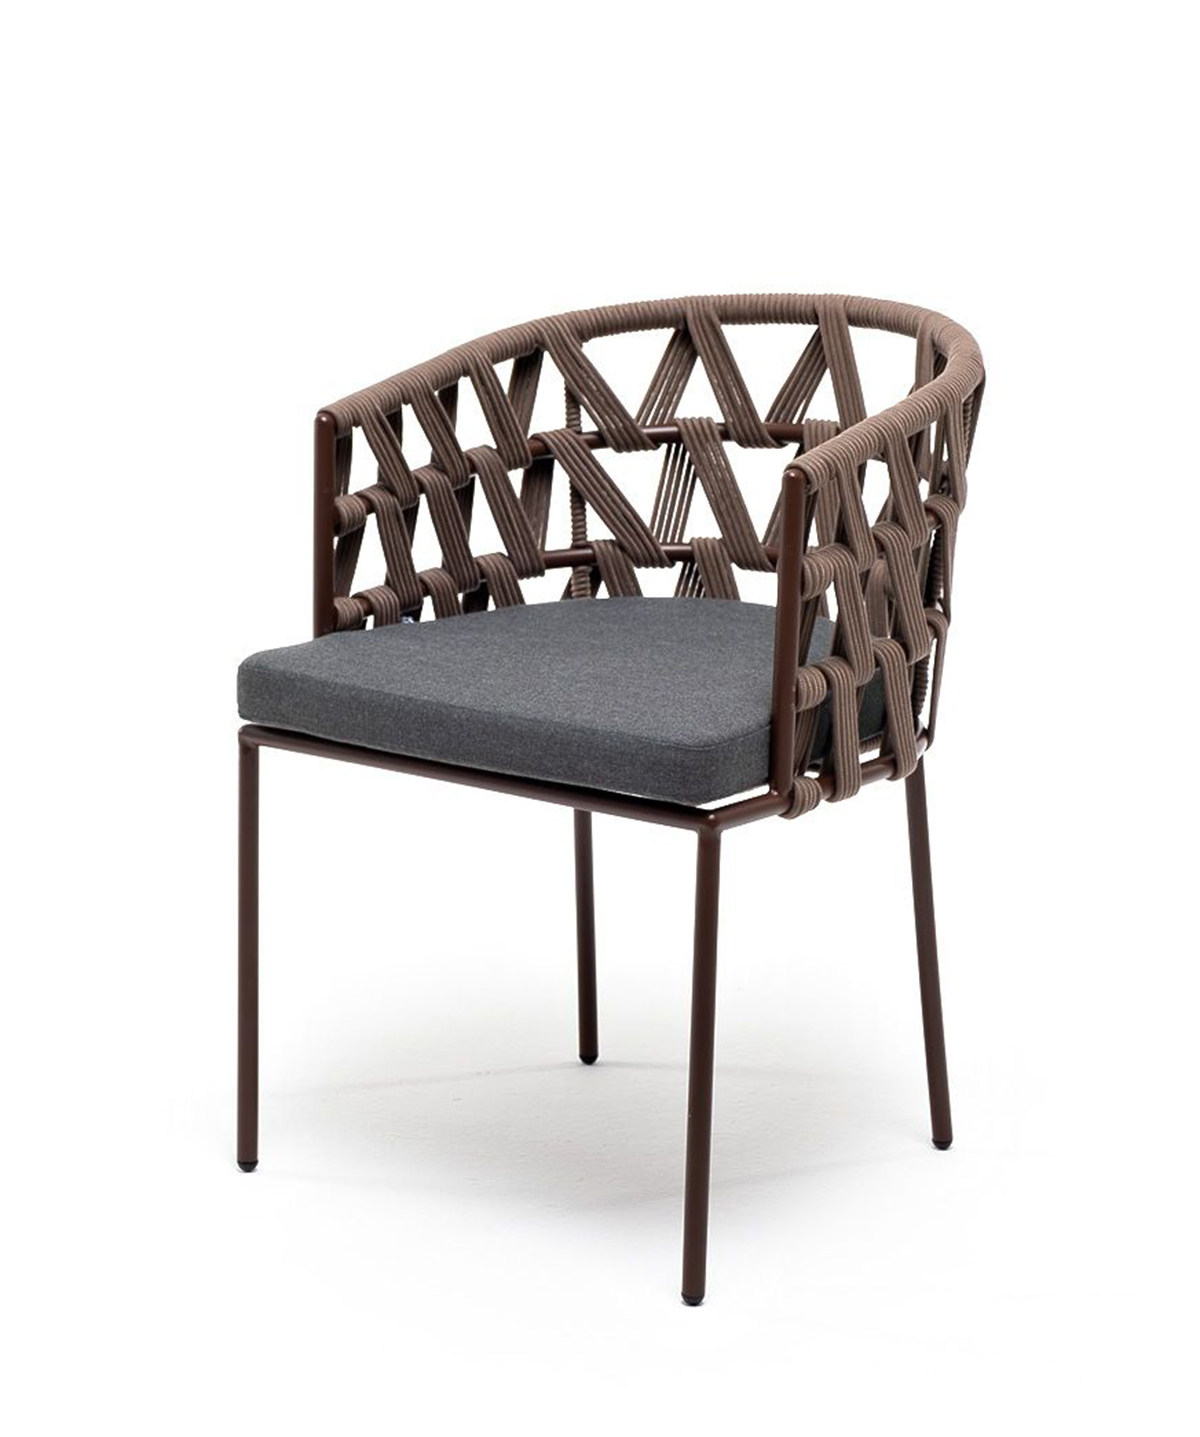 Плетеный стул из роупа Диего серо-коричневый плетеный стул из роупа диего серо коричневый